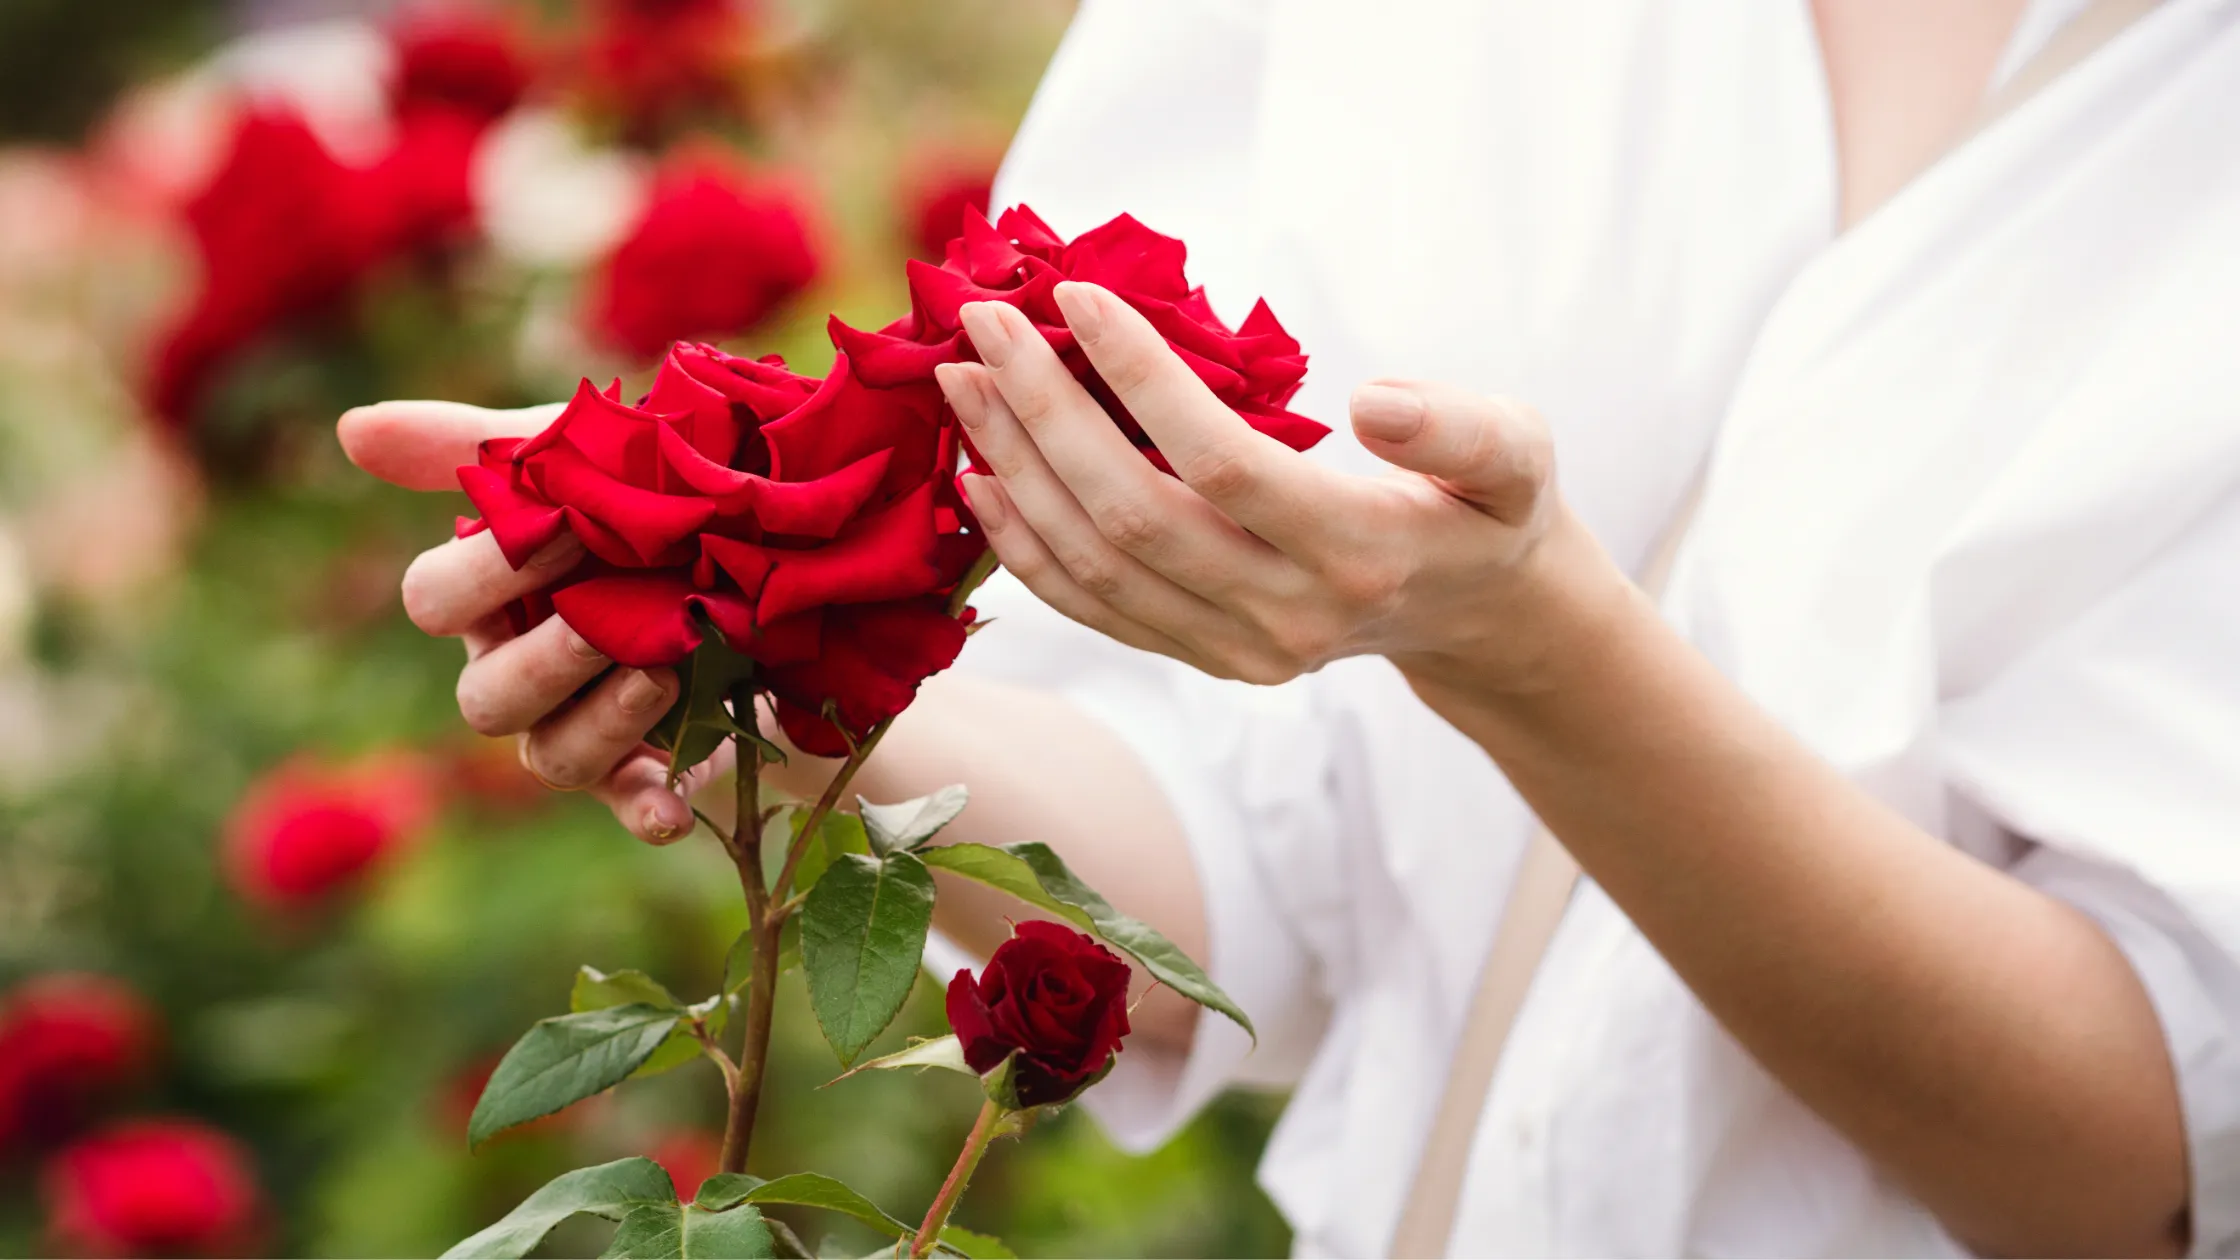 Red naomi is één van de meest bekende soorten rozen die er zijn.